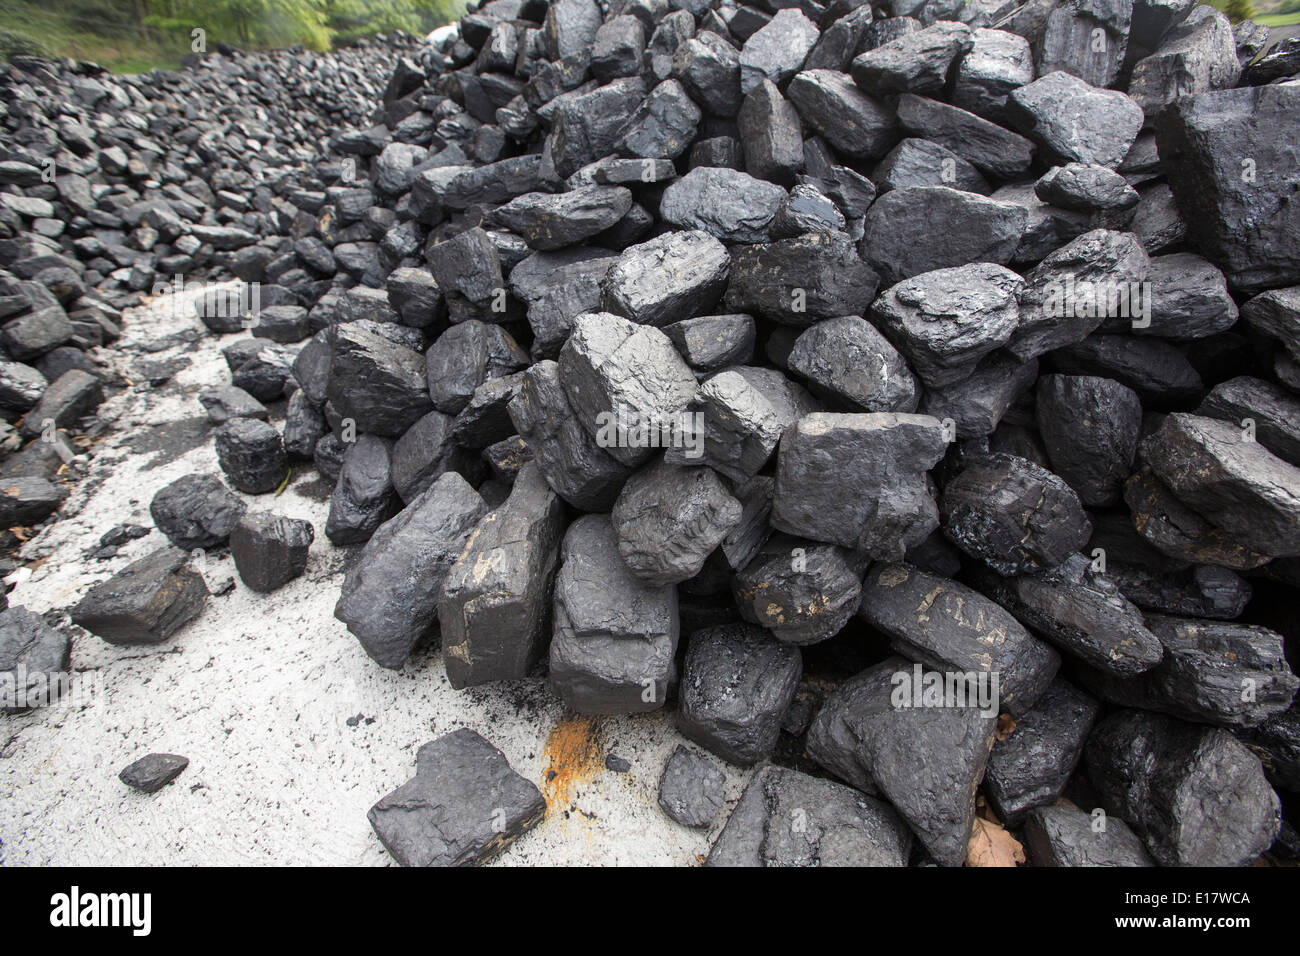 Le charbon à Lakeside et Haverthwaite que fer dans South Lakeland, Cumbria, Royaume-Uni. Banque D'Images